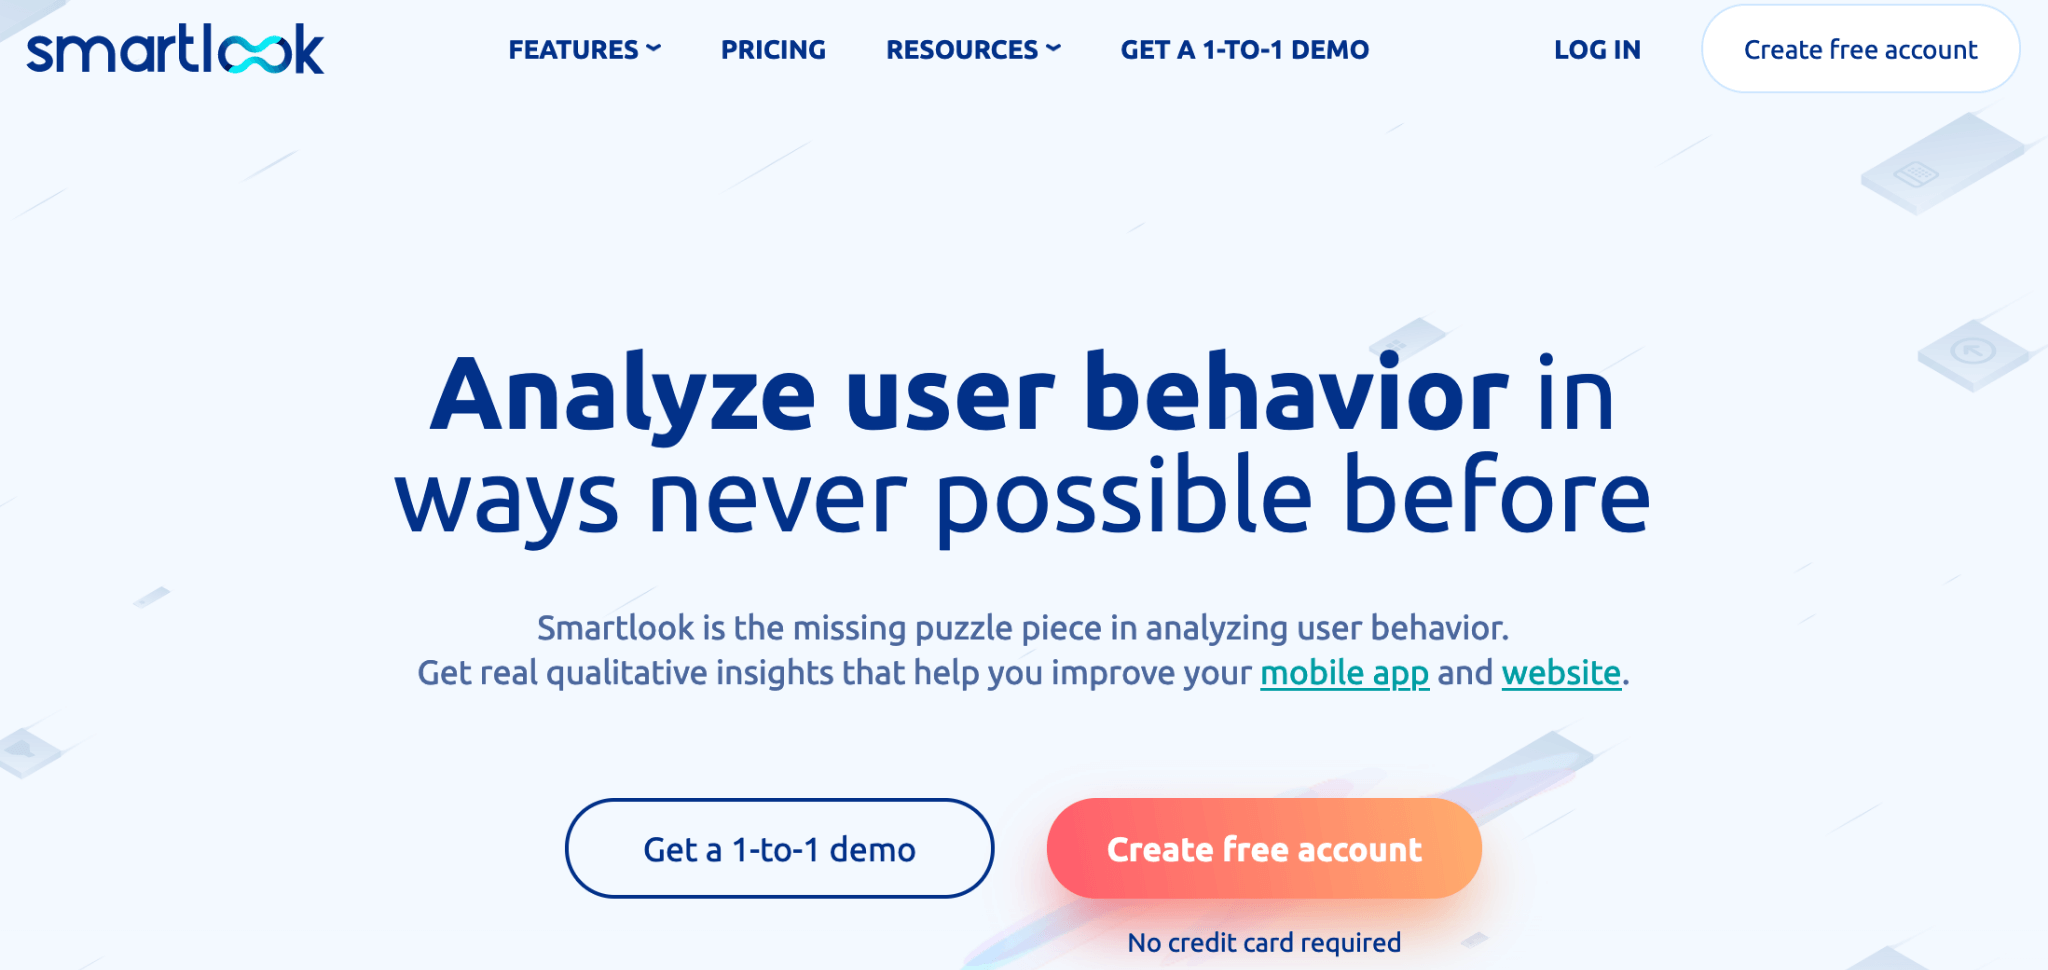 Smartlook homepage: Analyze user behavior in ways never possible before.